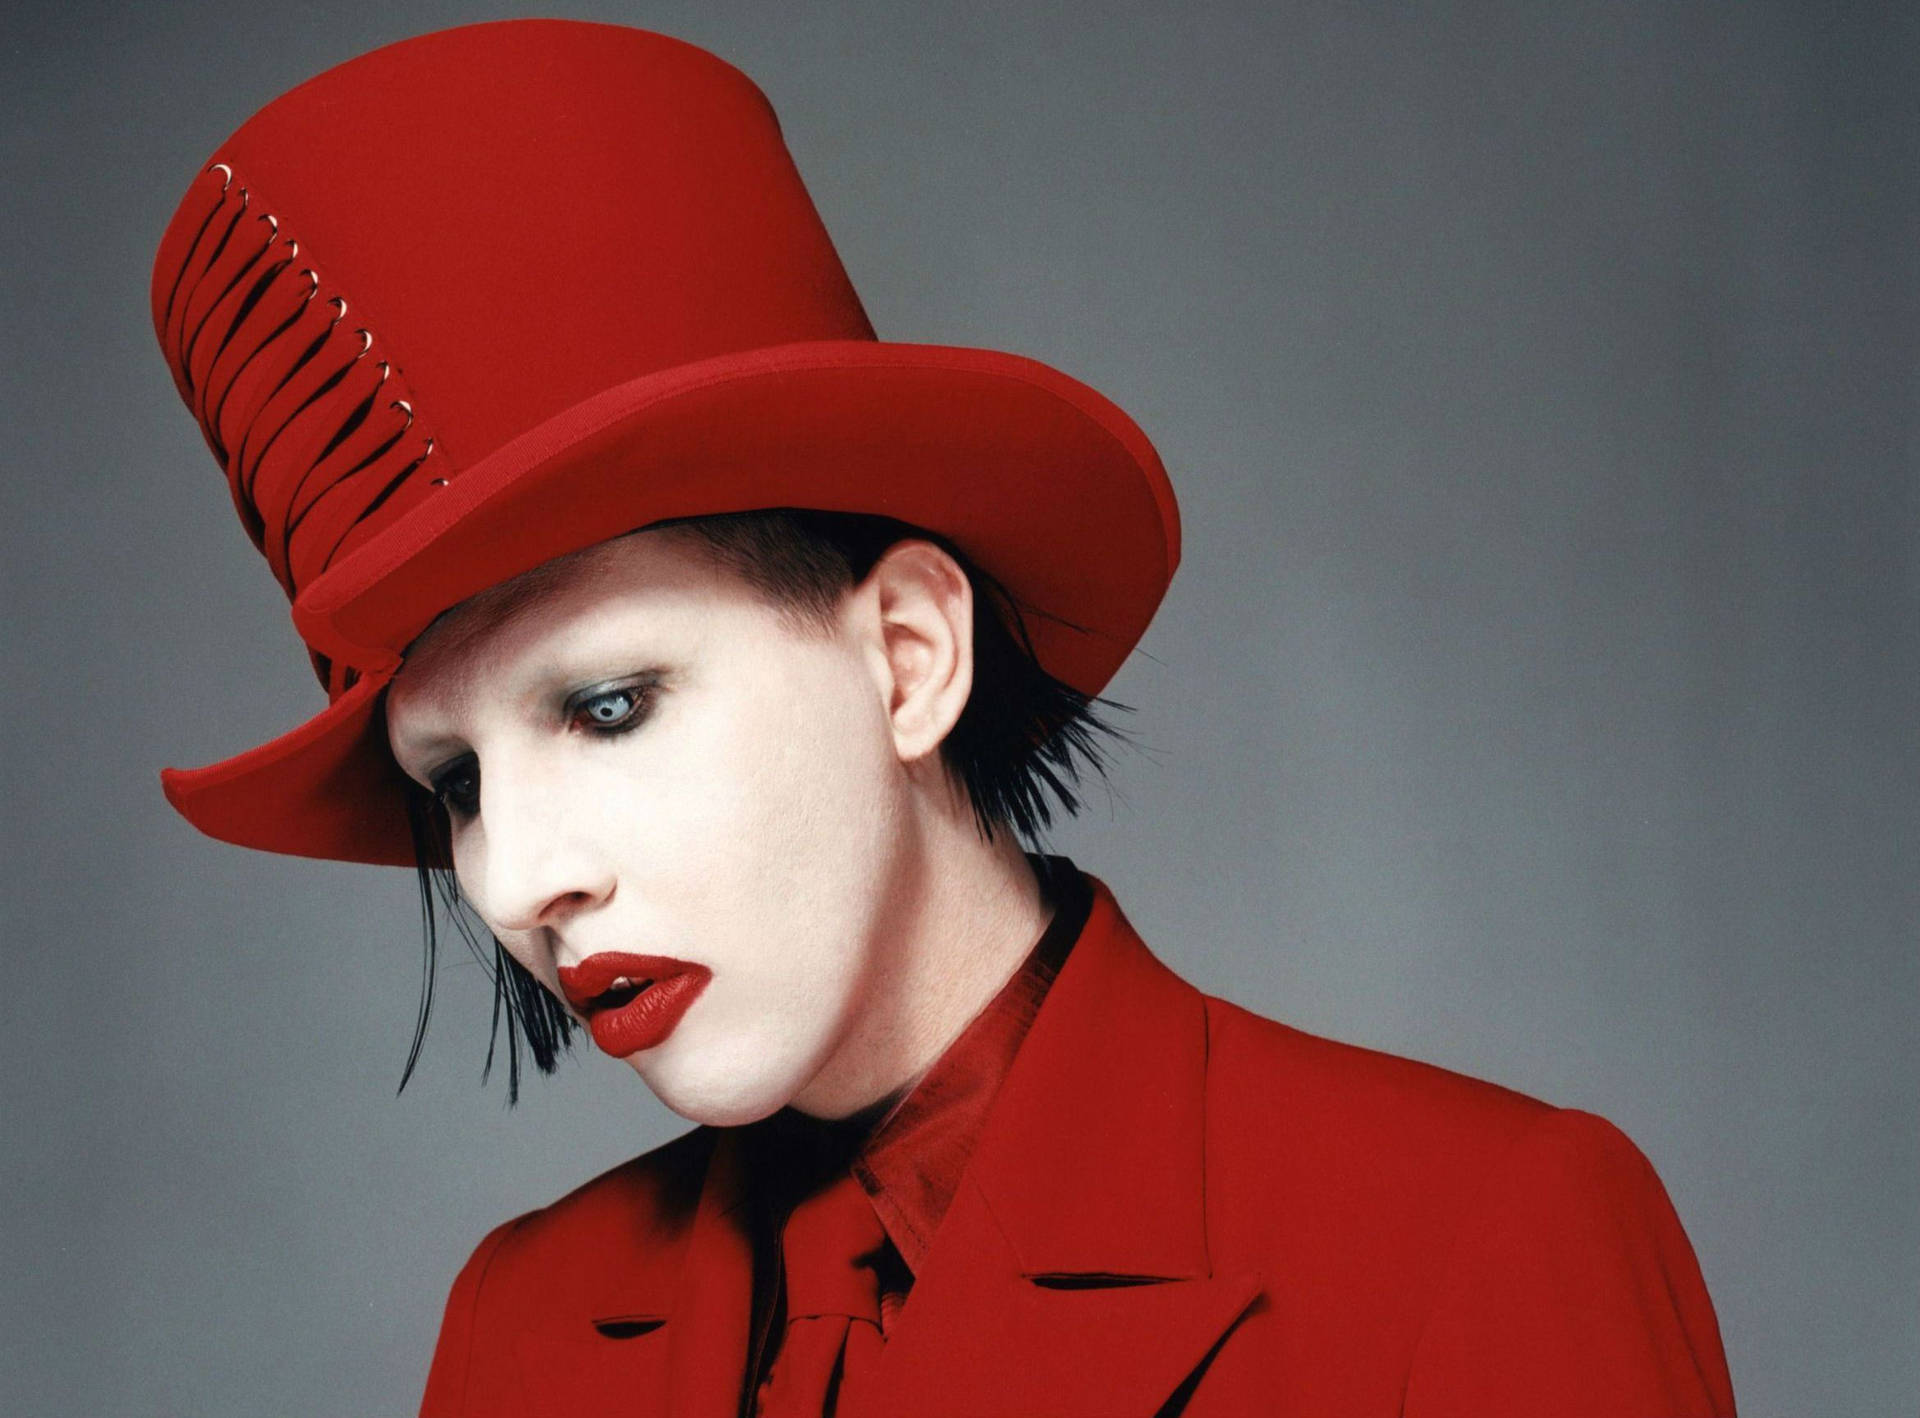 Marilynmanson På Grammys - Marilyn Manson På Grammys Är Ett Bra Motiv För En Dator- Eller Mobiltelefon Tapet. Wallpaper